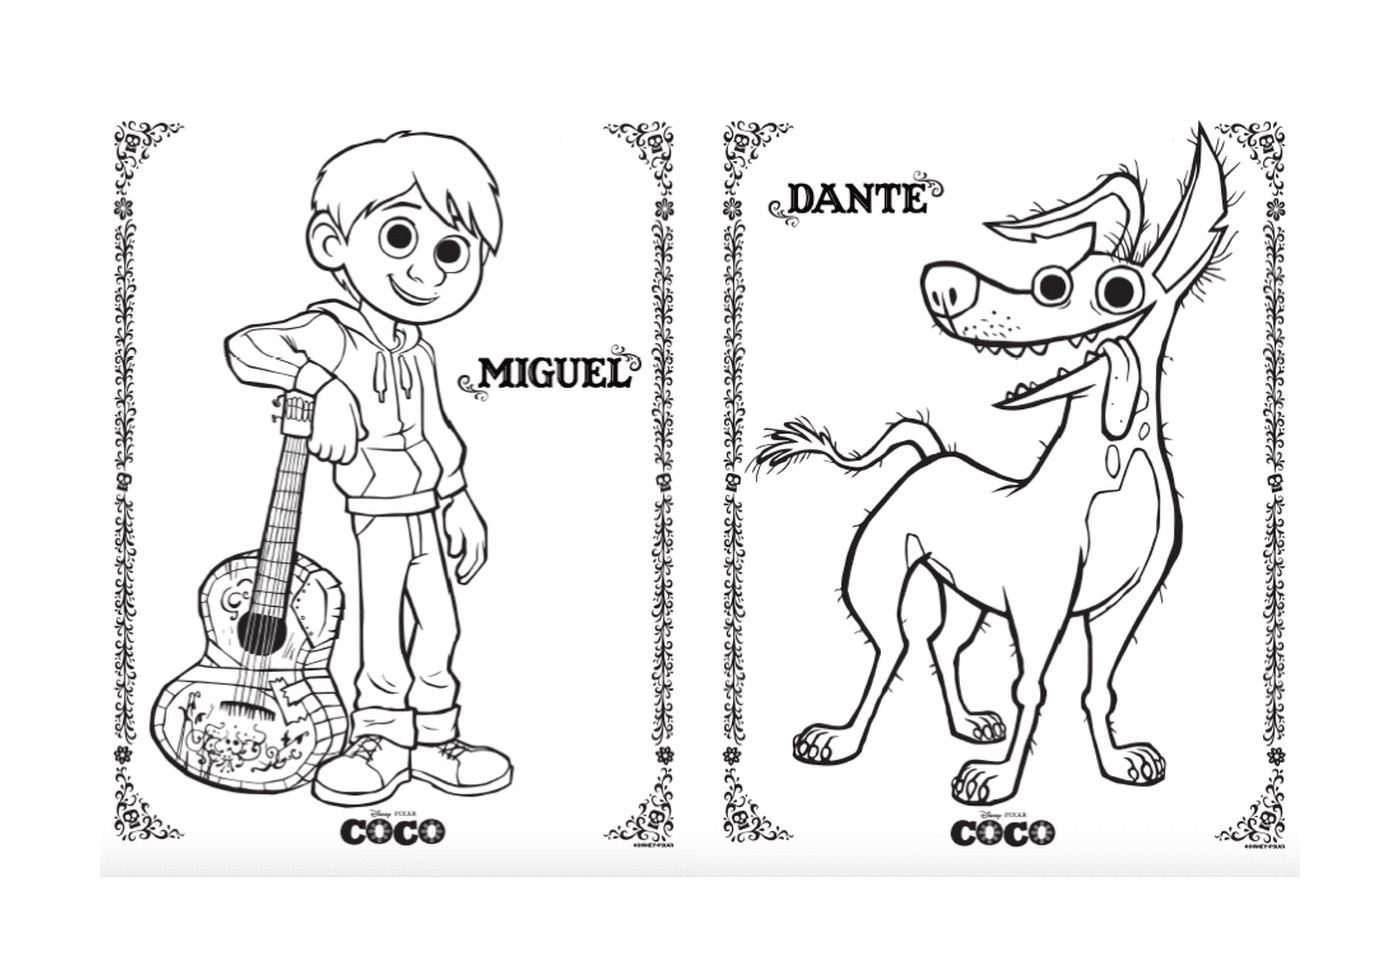  Miguel e Dante il Cane, a Disney Coco Pixar 